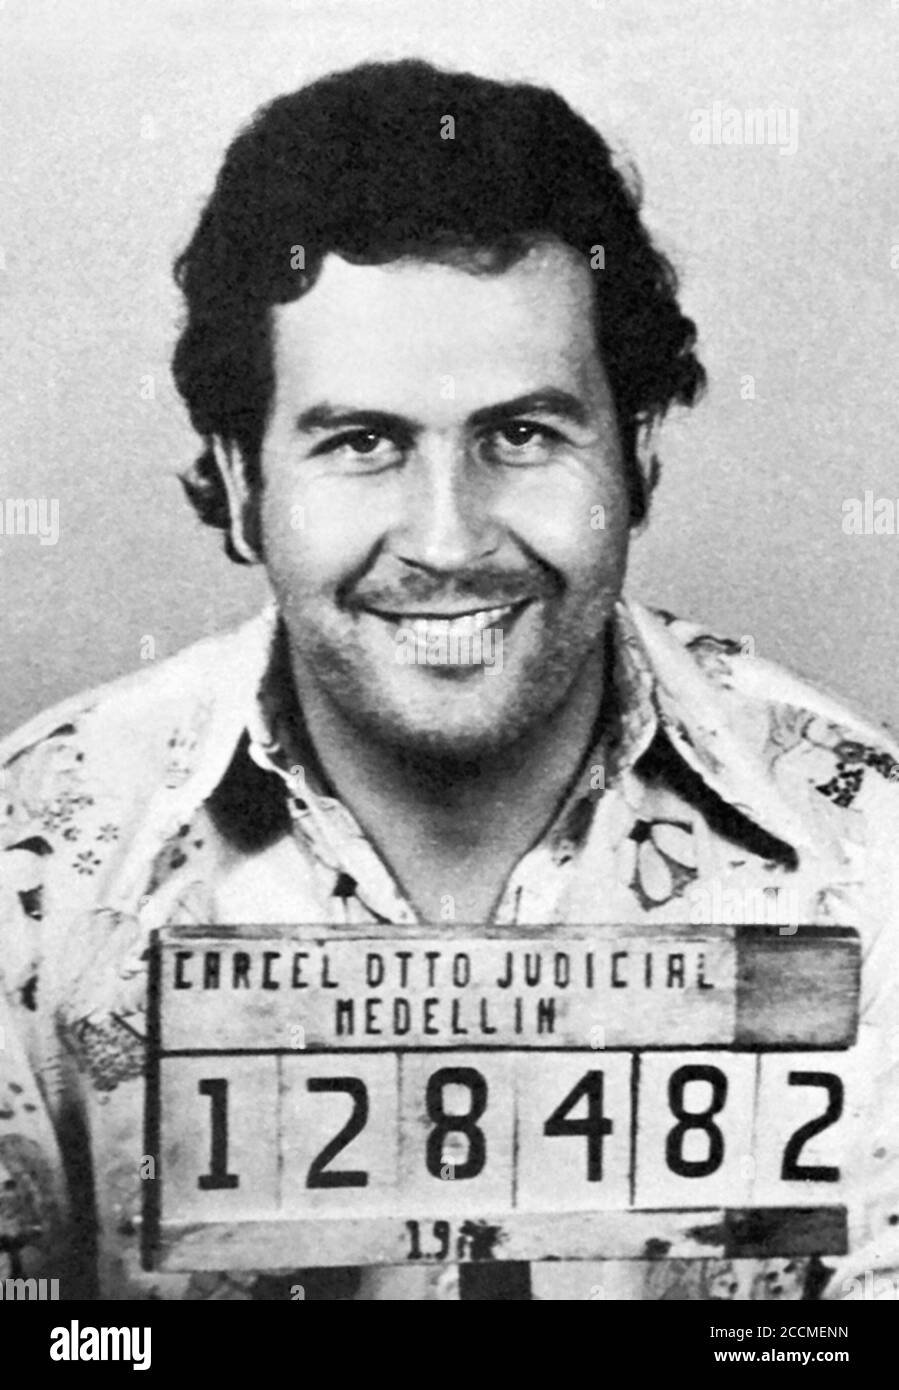 Mug-Aufnahme des kolumbianischen drogenherrn Pablo Escobar, aufgenommen 1976 in Medellin Stockfoto